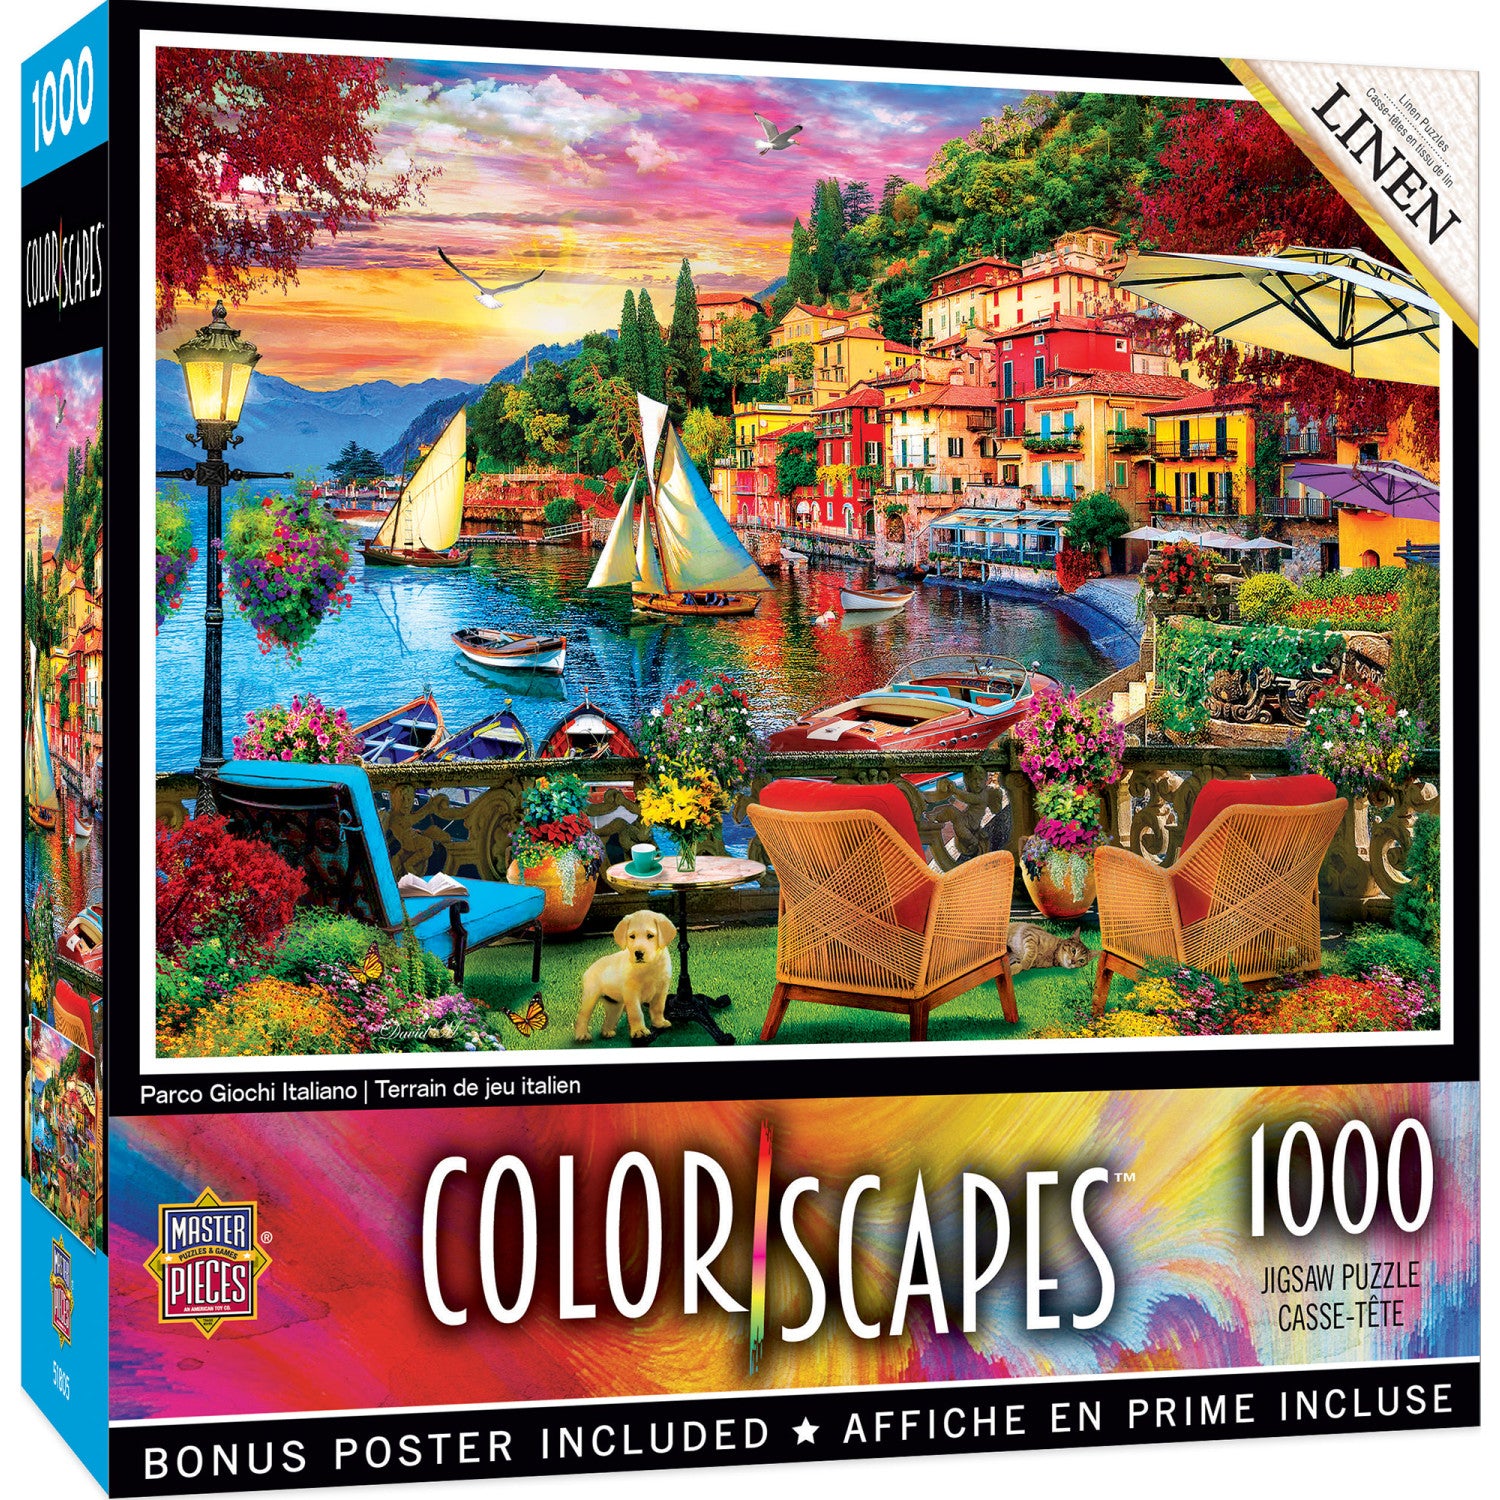 Colorscapes - Parco Giochi Italiano 1000 Piece Jigsaw Puzzle